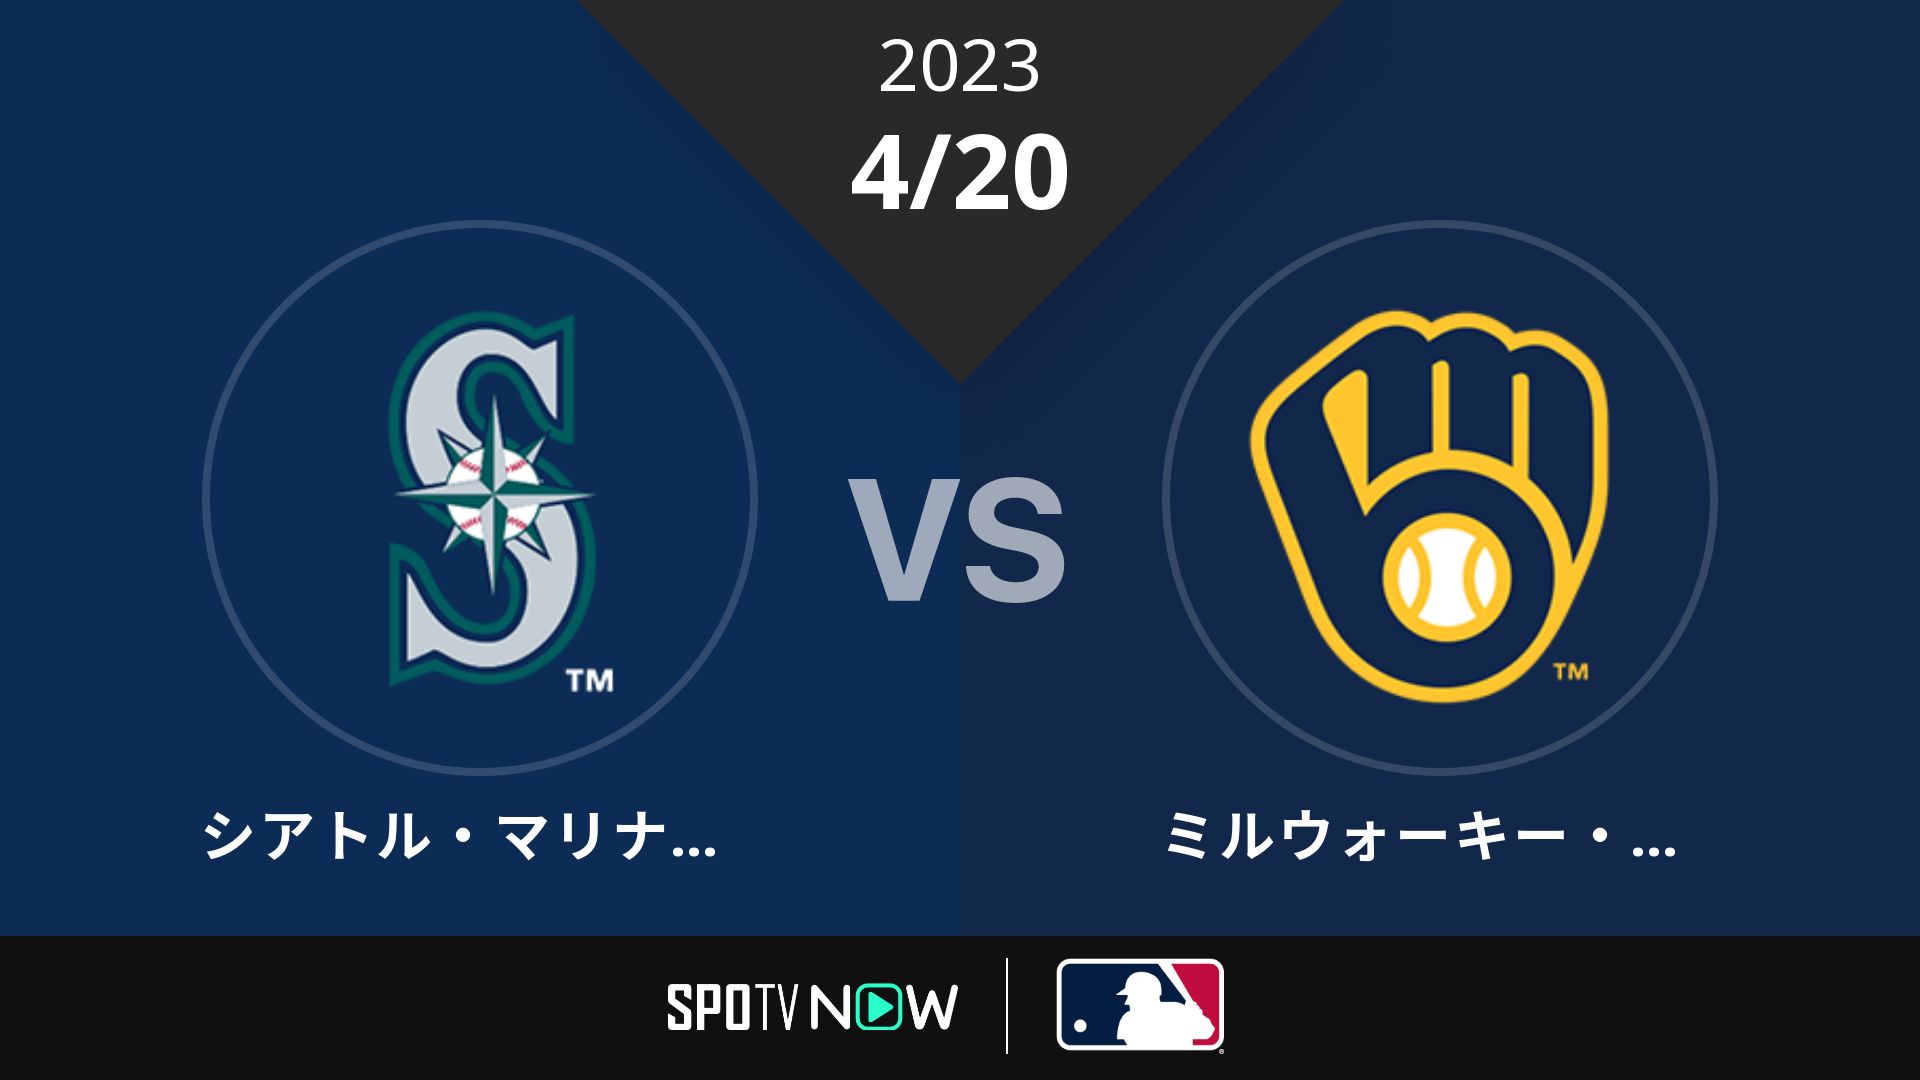 2023/4/20 マリナーズ vs ブリュワーズ [MLB]